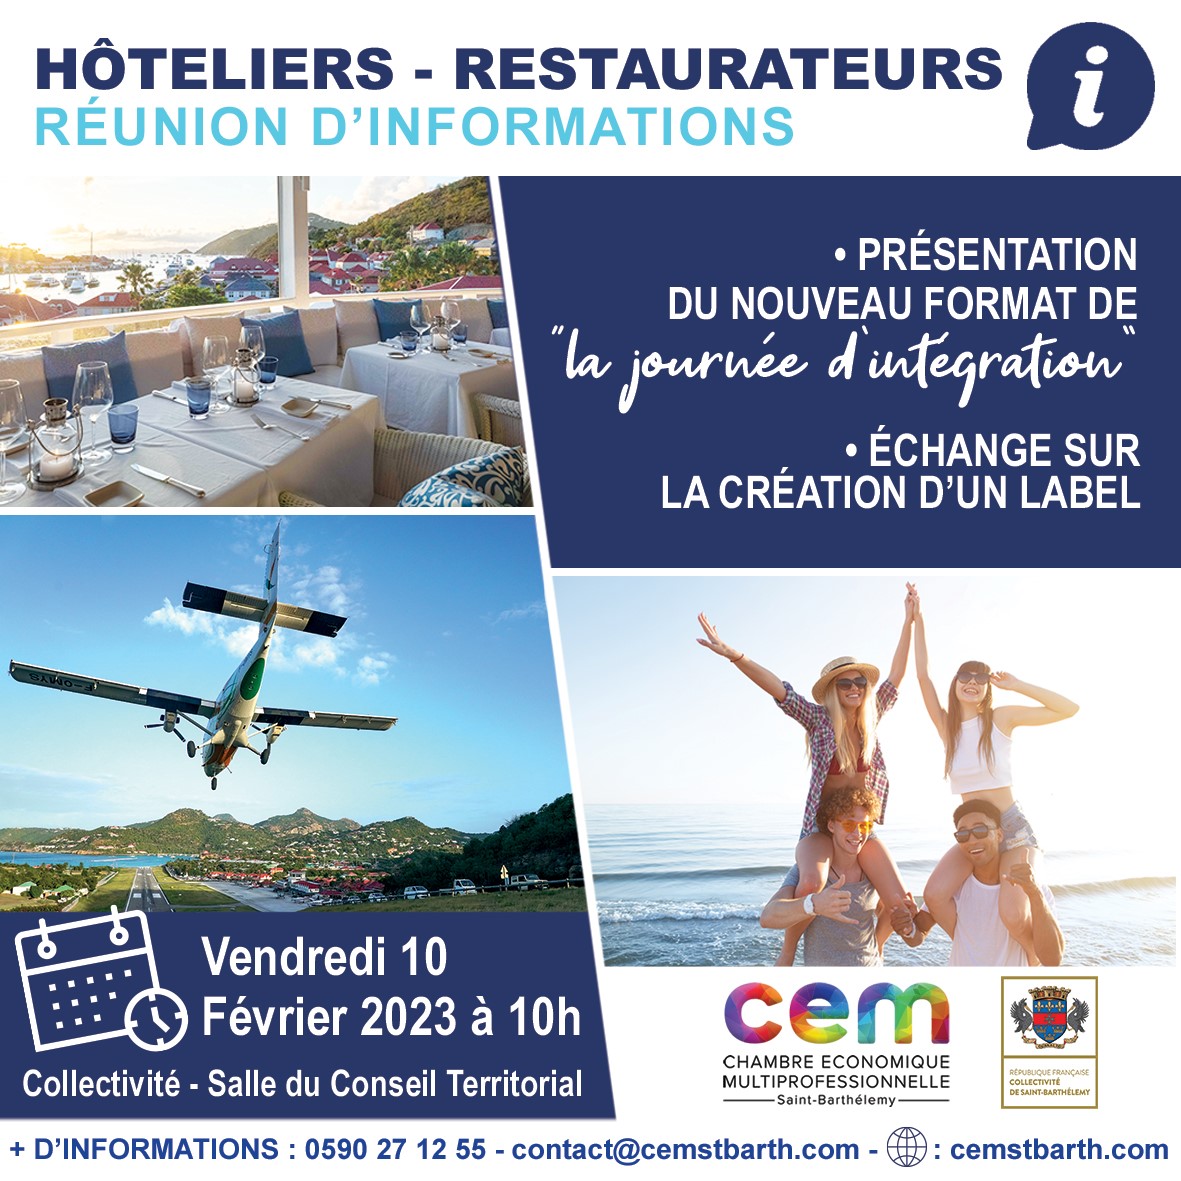 RÉUNION D'INFORMATION - HOTELIERS RESTAURATEURS 